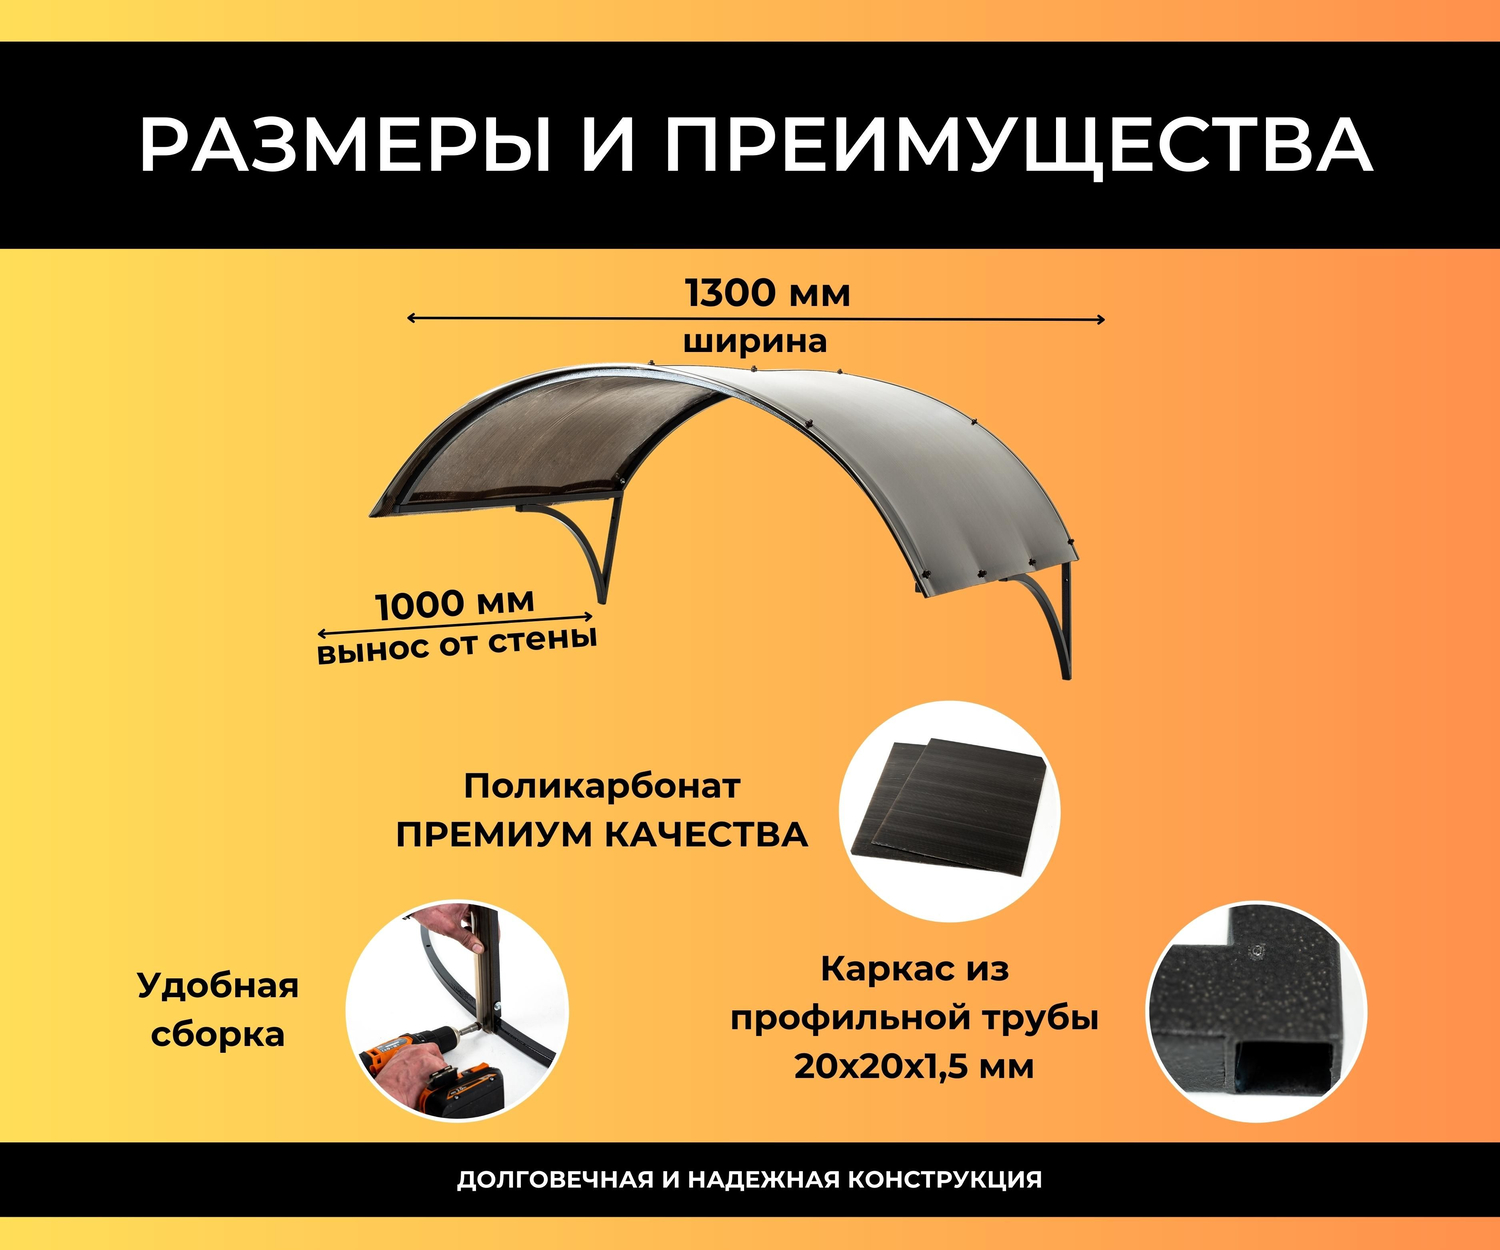 Купить козырек защитный из поликарбоната в Украине